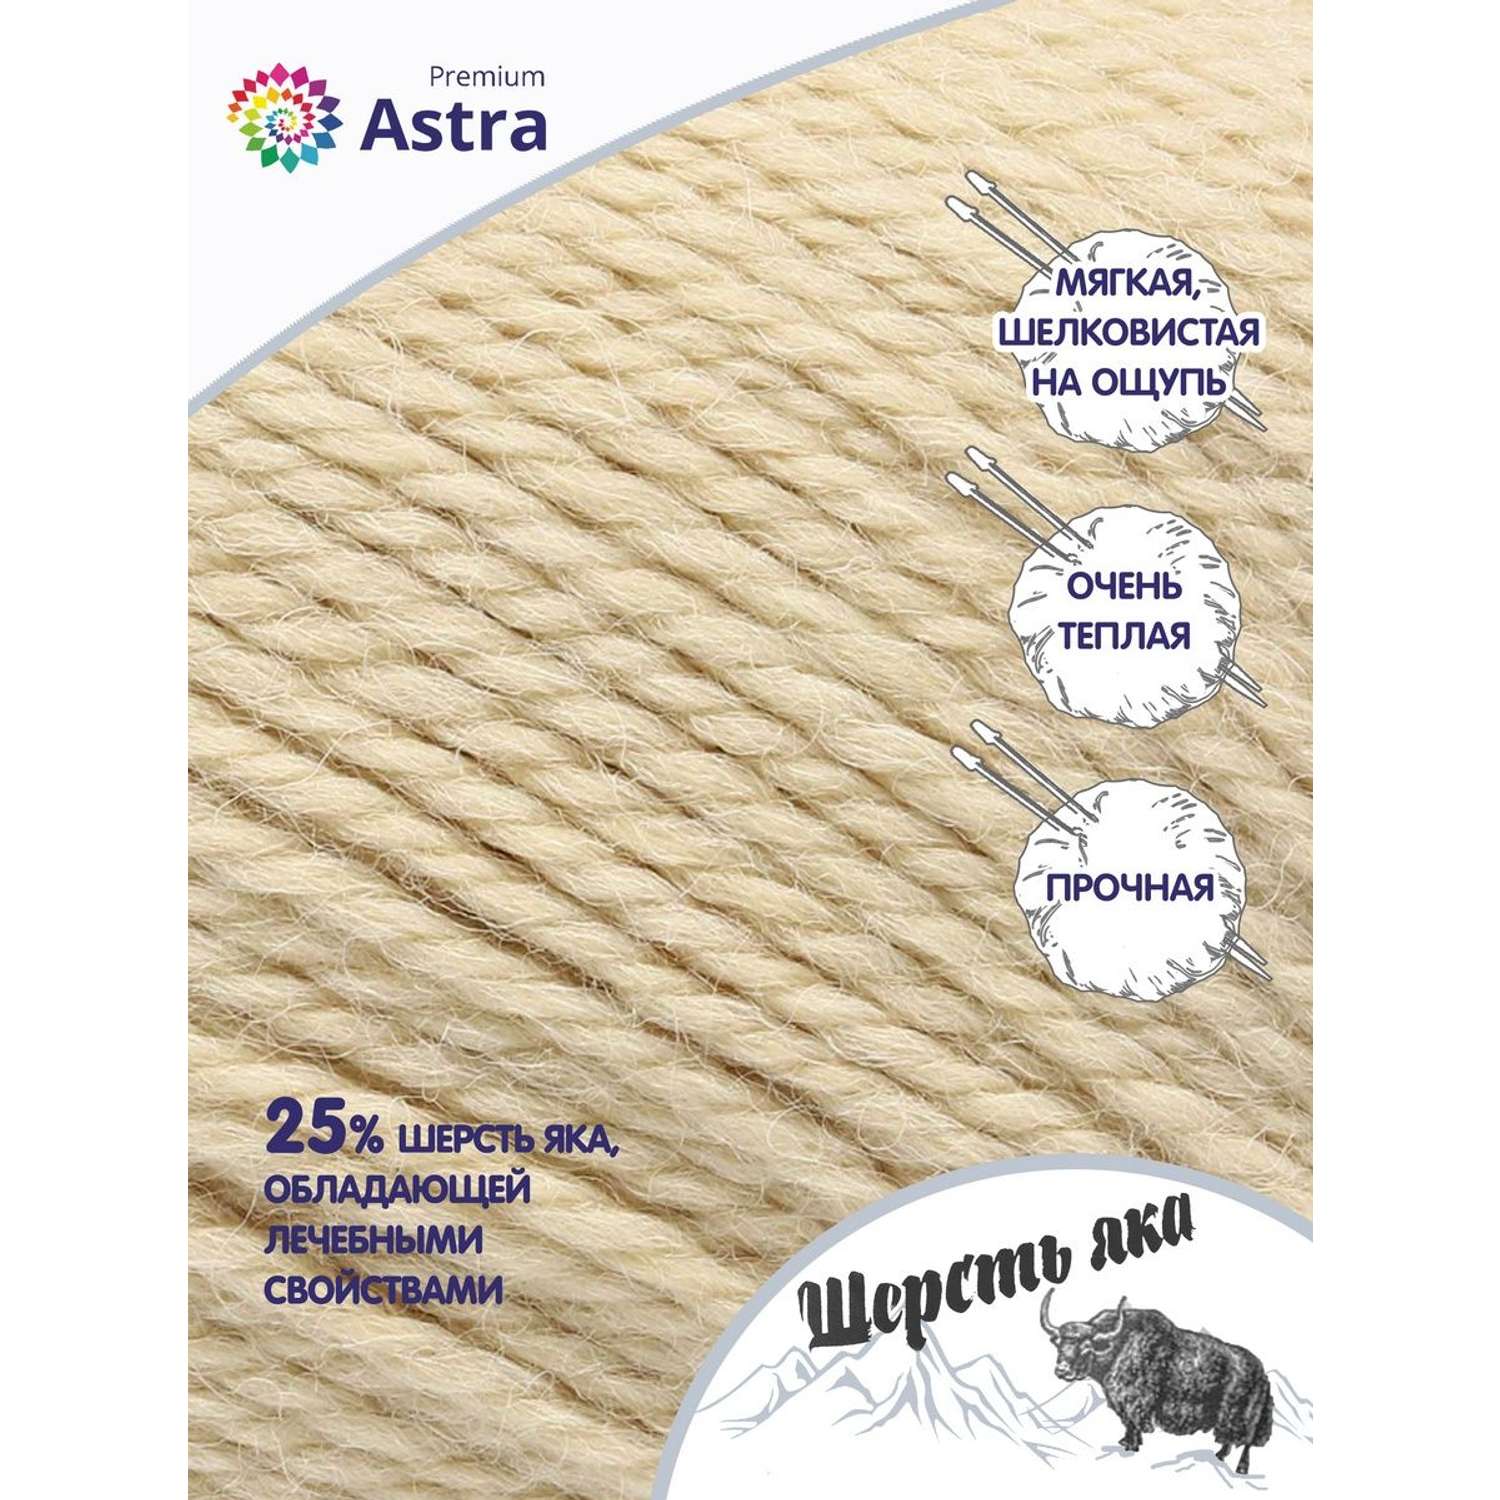 Пряжа Astra Premium Шерсть яка Yak wool теплая мягкая 100 г 120 м 06 молочный 2 мотка - фото 2